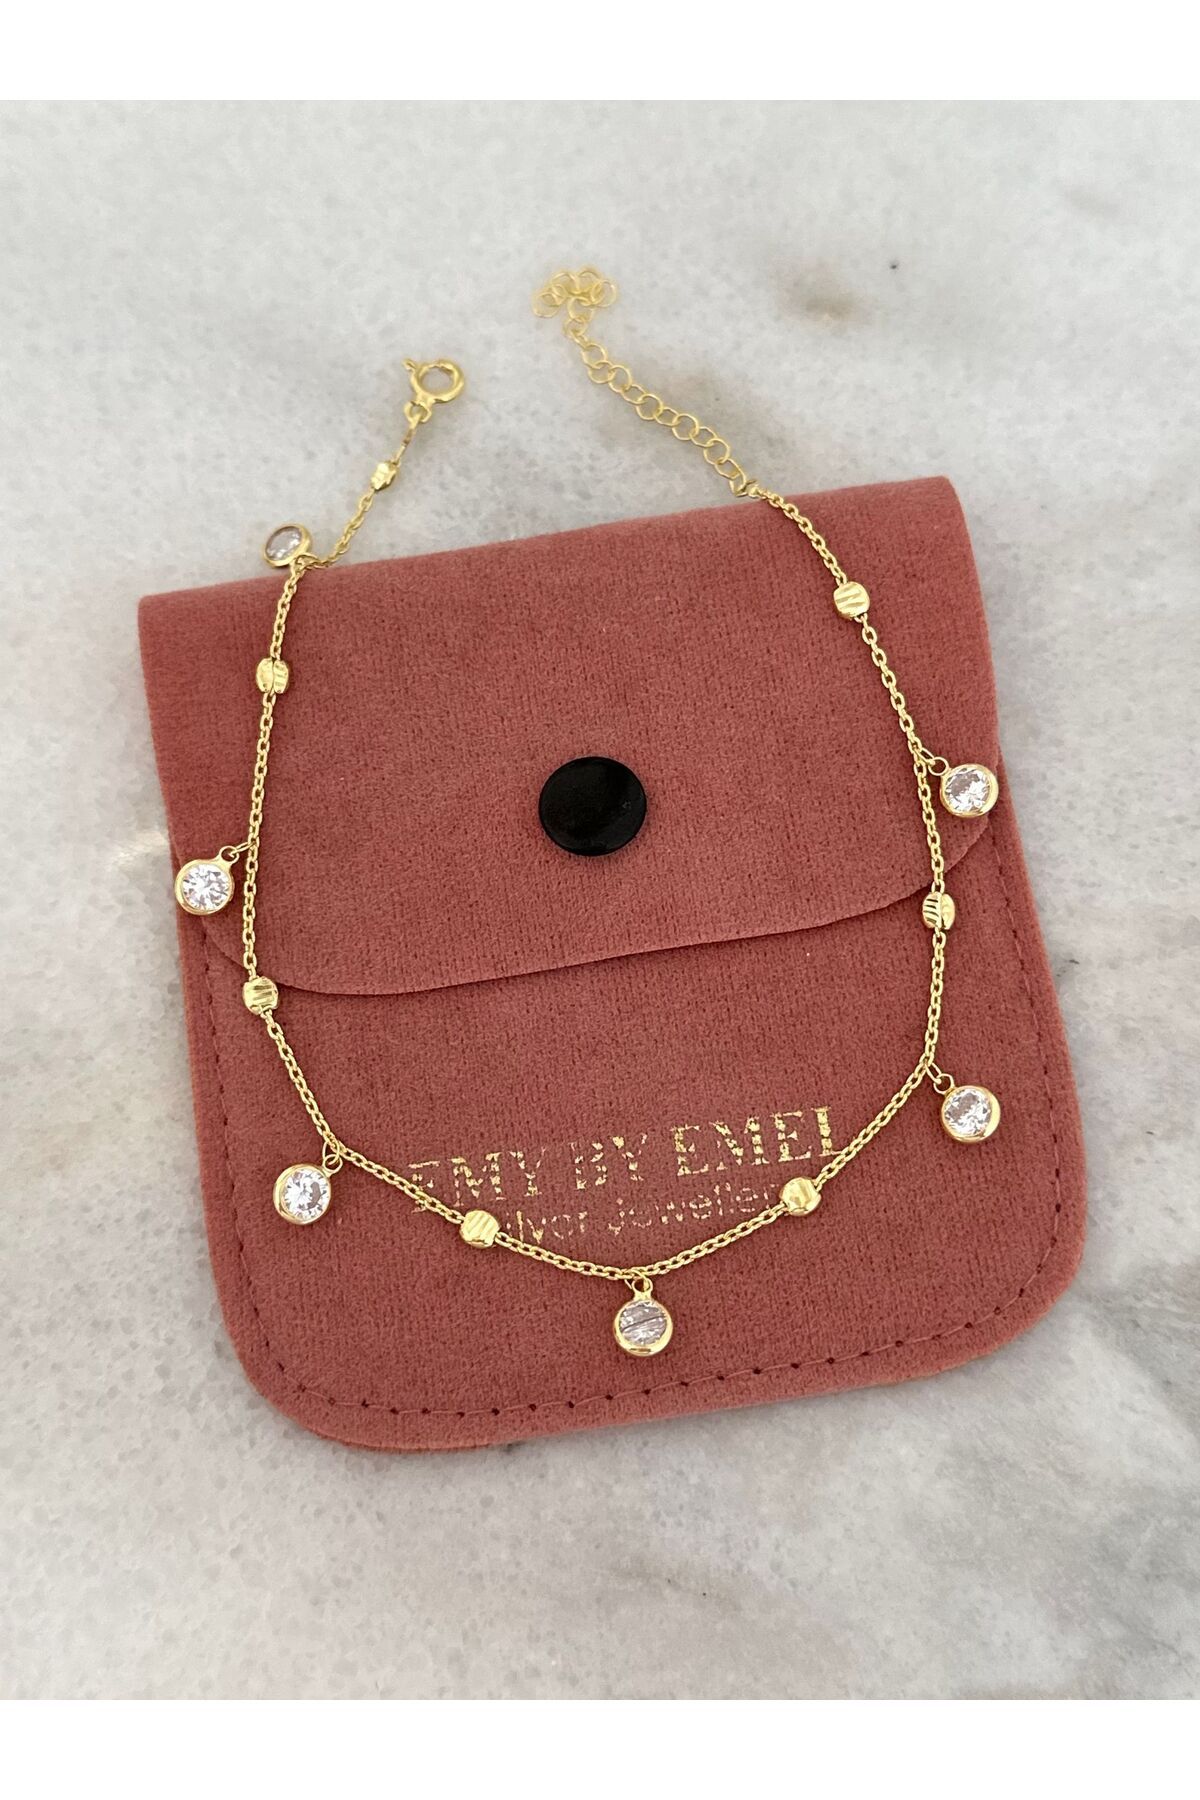 emy by emel luxury silver jewelry Halhal - Sallantılı Taşlı Halhal Altın Kaplama 925 Ayar Gümüş